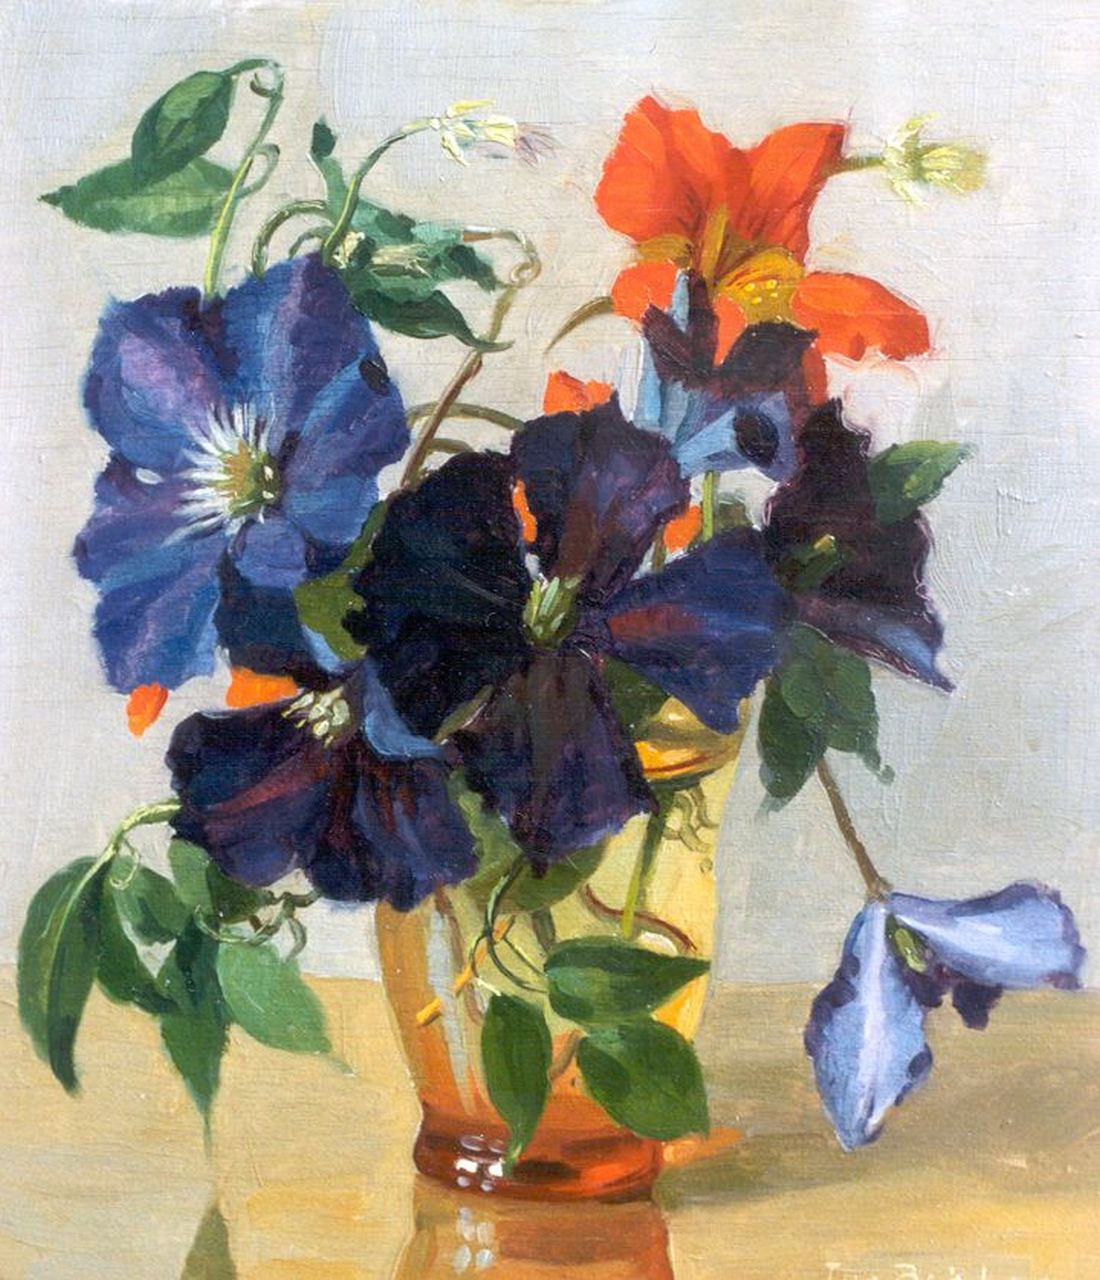 Jan Bakker | Clematis in a vase, oil on panel, 26.0 x 23.0 cm, signed l.r.